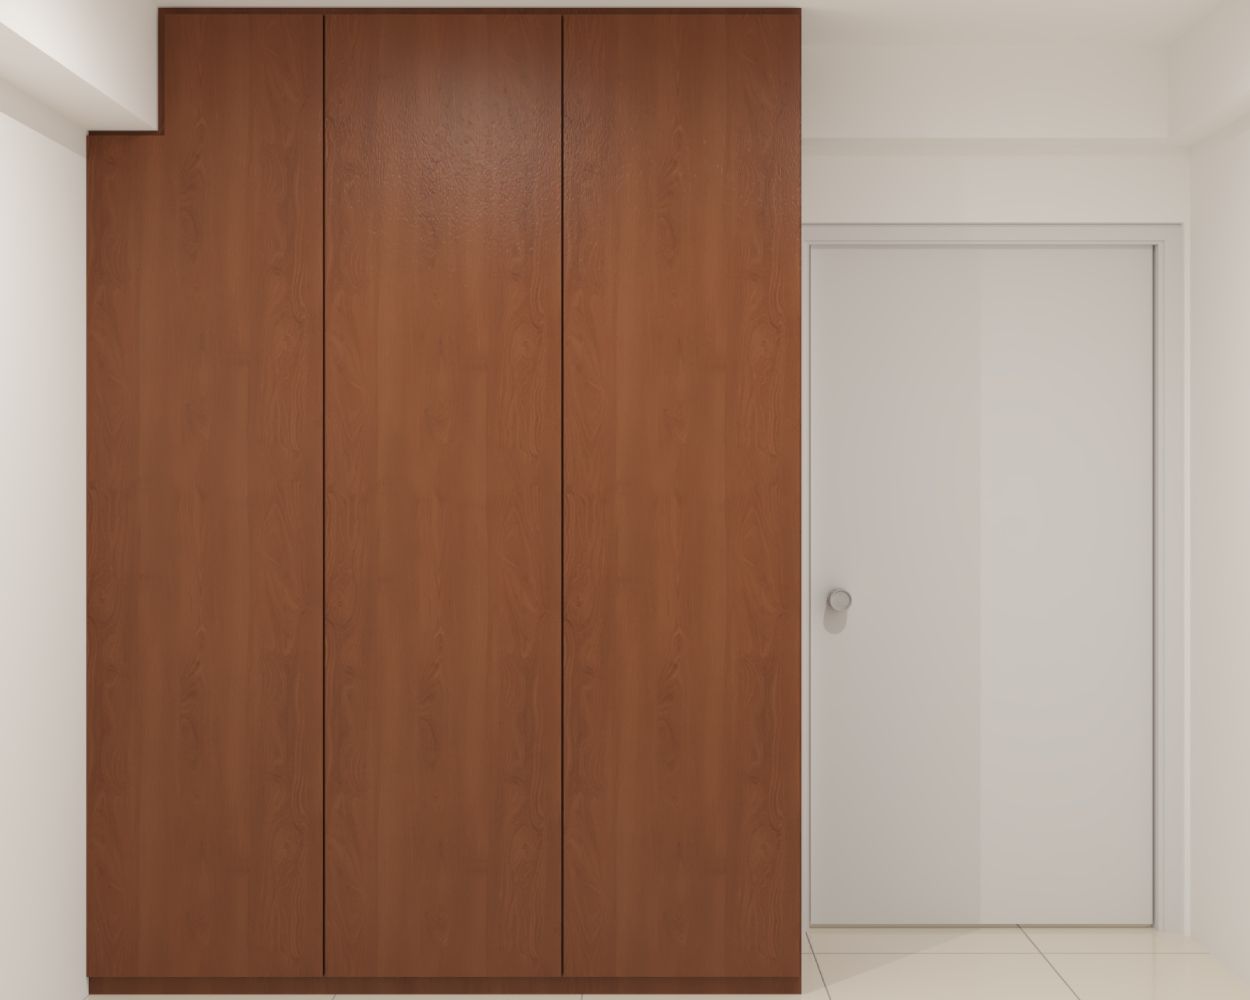 Modern Three-Door Wardrobe Design With A Warm Wooden Finish